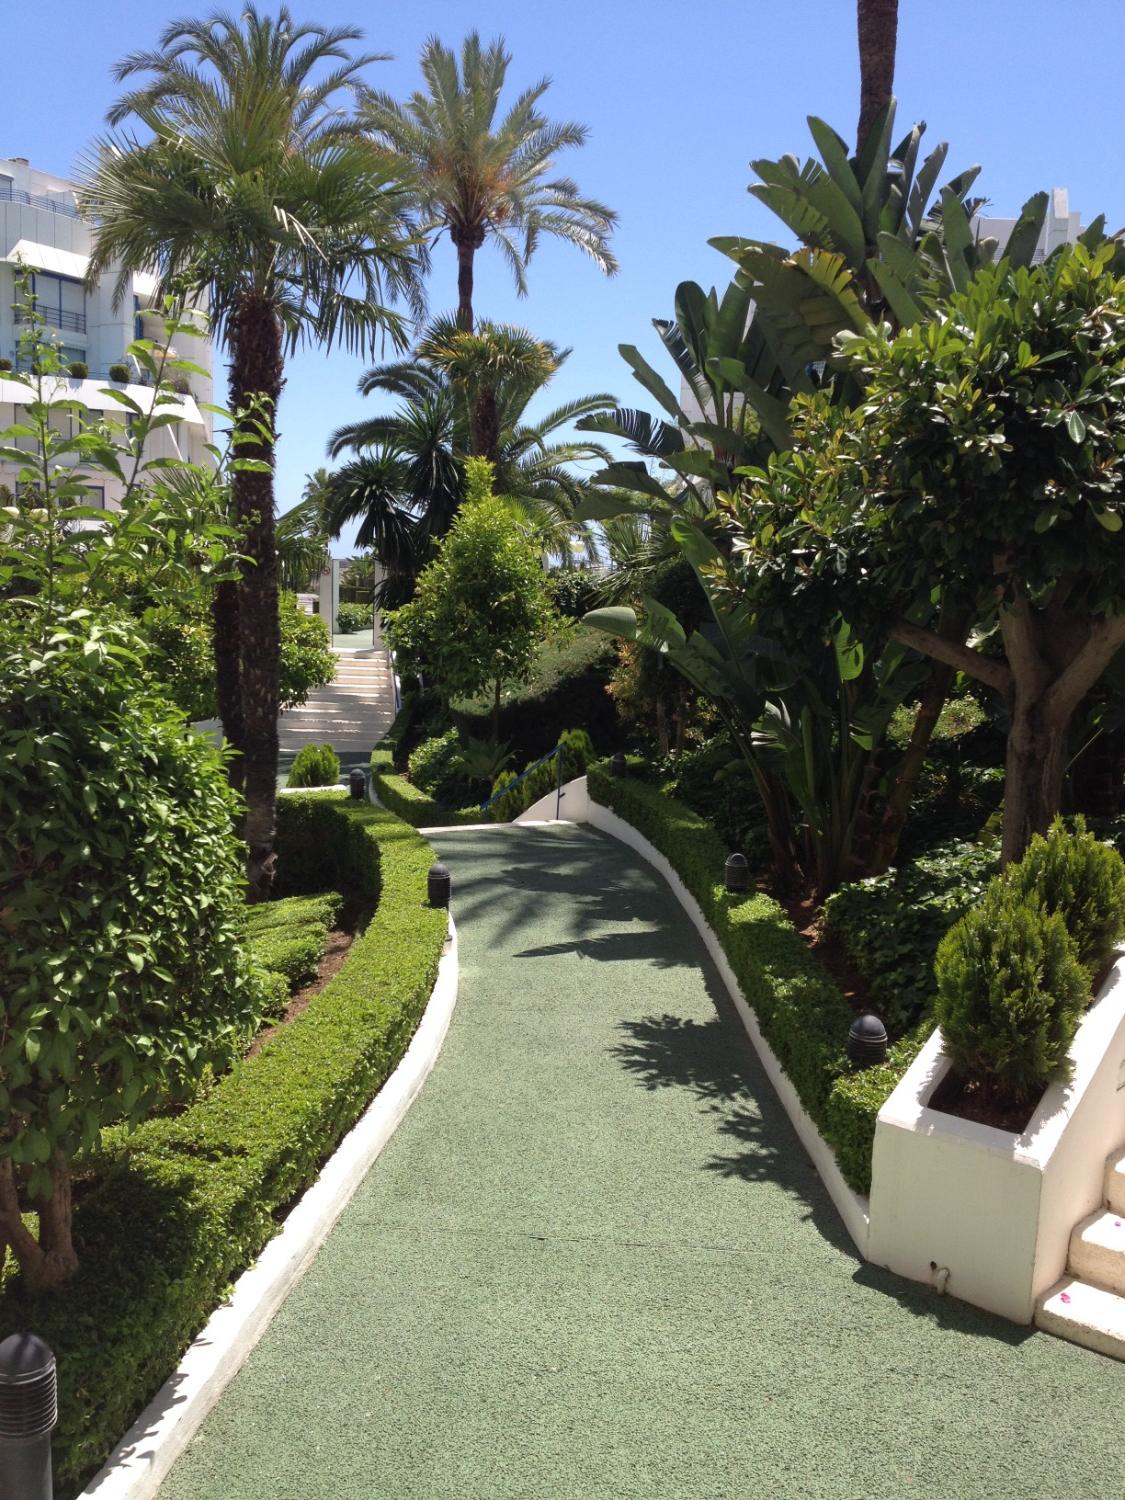 Hyra. Duplex med 2 sovrum. 1 minuts promenad från stranden. Marbella.